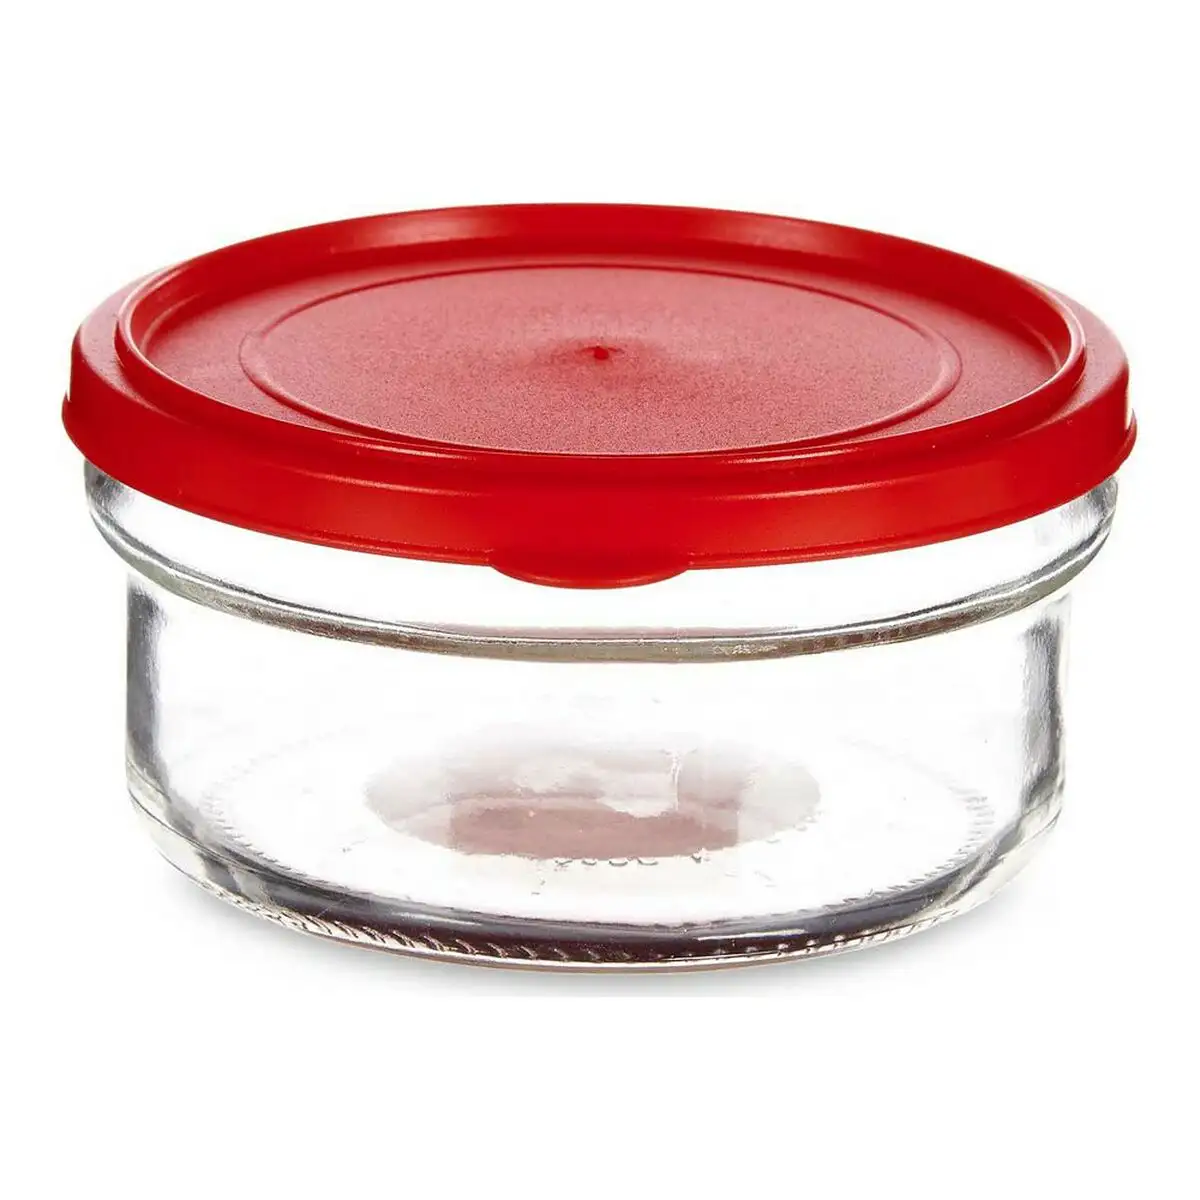 Lunch box ronde avec couvercle rouge 4 15 l verre plastique transparent 12 x 6 x 12 cm 415 ml_6941. DIAYTAR SENEGAL - Où Chaque Sélection est une Victoire. Découvrez notre boutique en ligne et trouvez des articles qui vous rendent la vie plus belle, un choix à la fois.